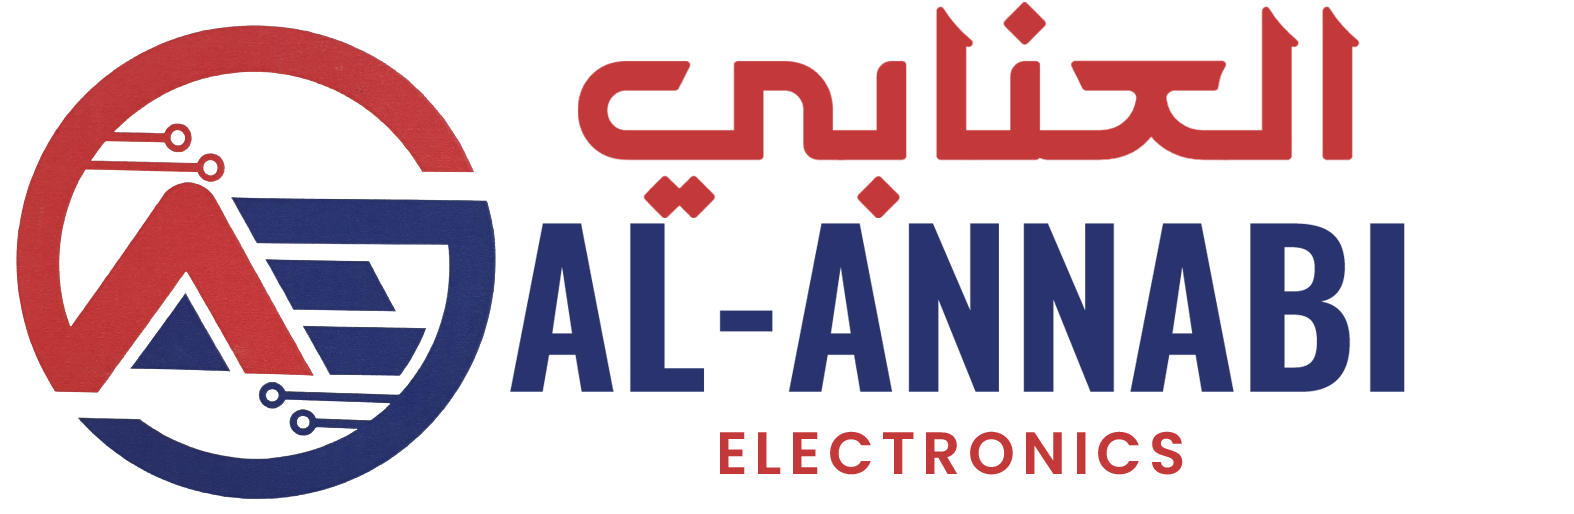 Al Annabi